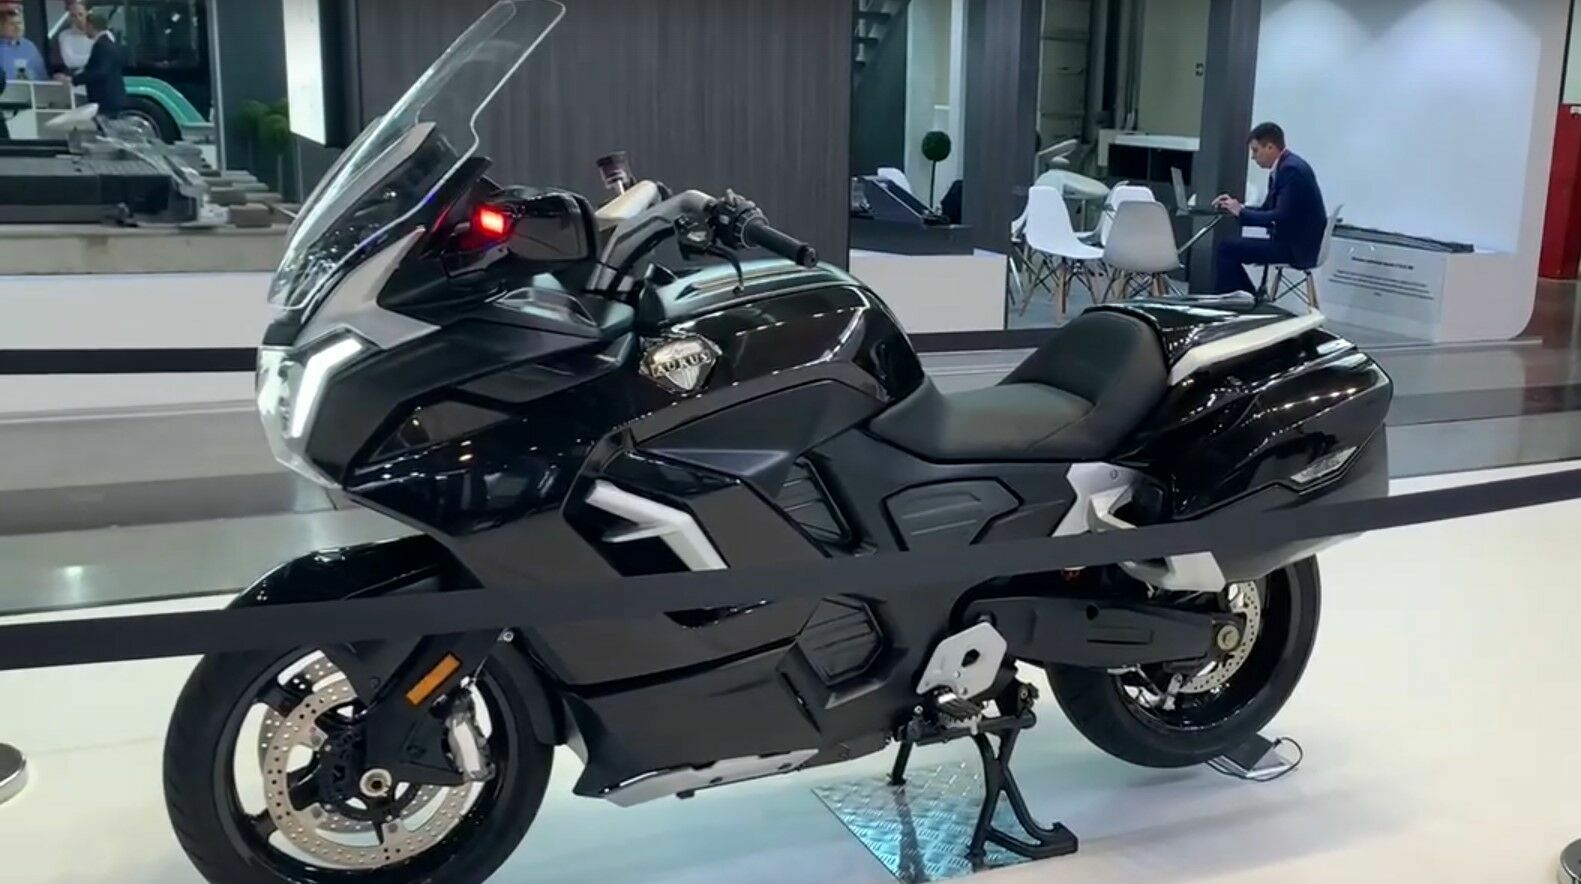 Aurus представил прототип электромотоцикла Merlon с пиковой мощностью 140 кВт (ВИДЕО)